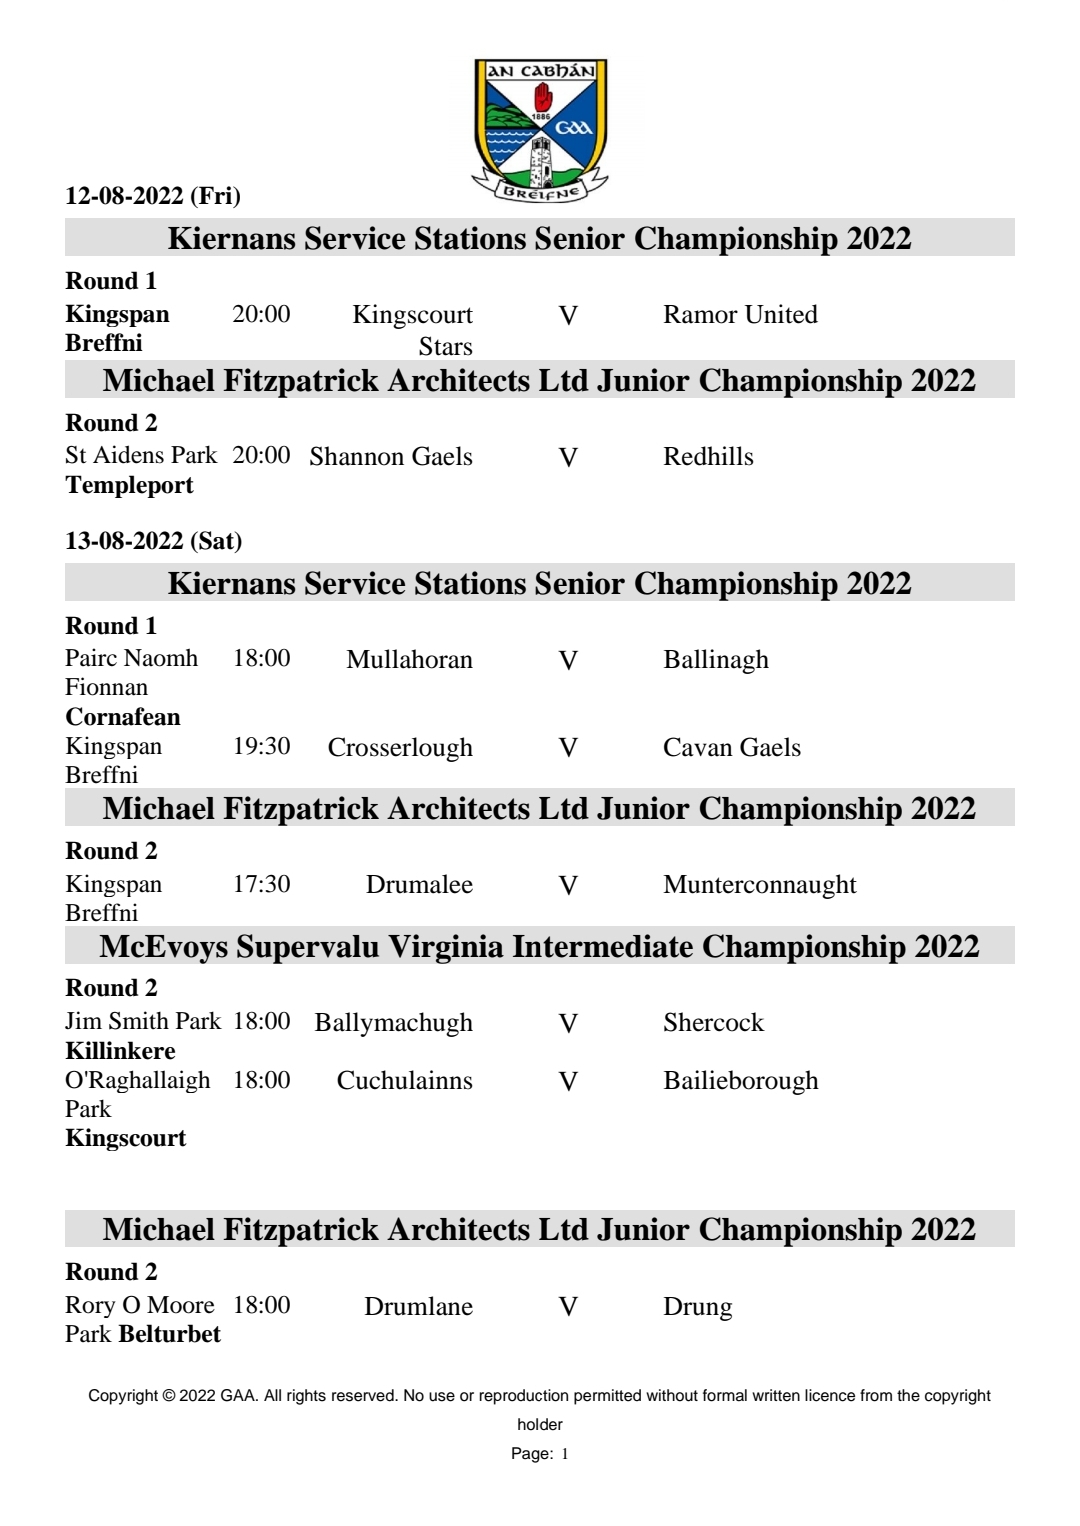 Round 1 Championship Fixtures - Cavan GAA